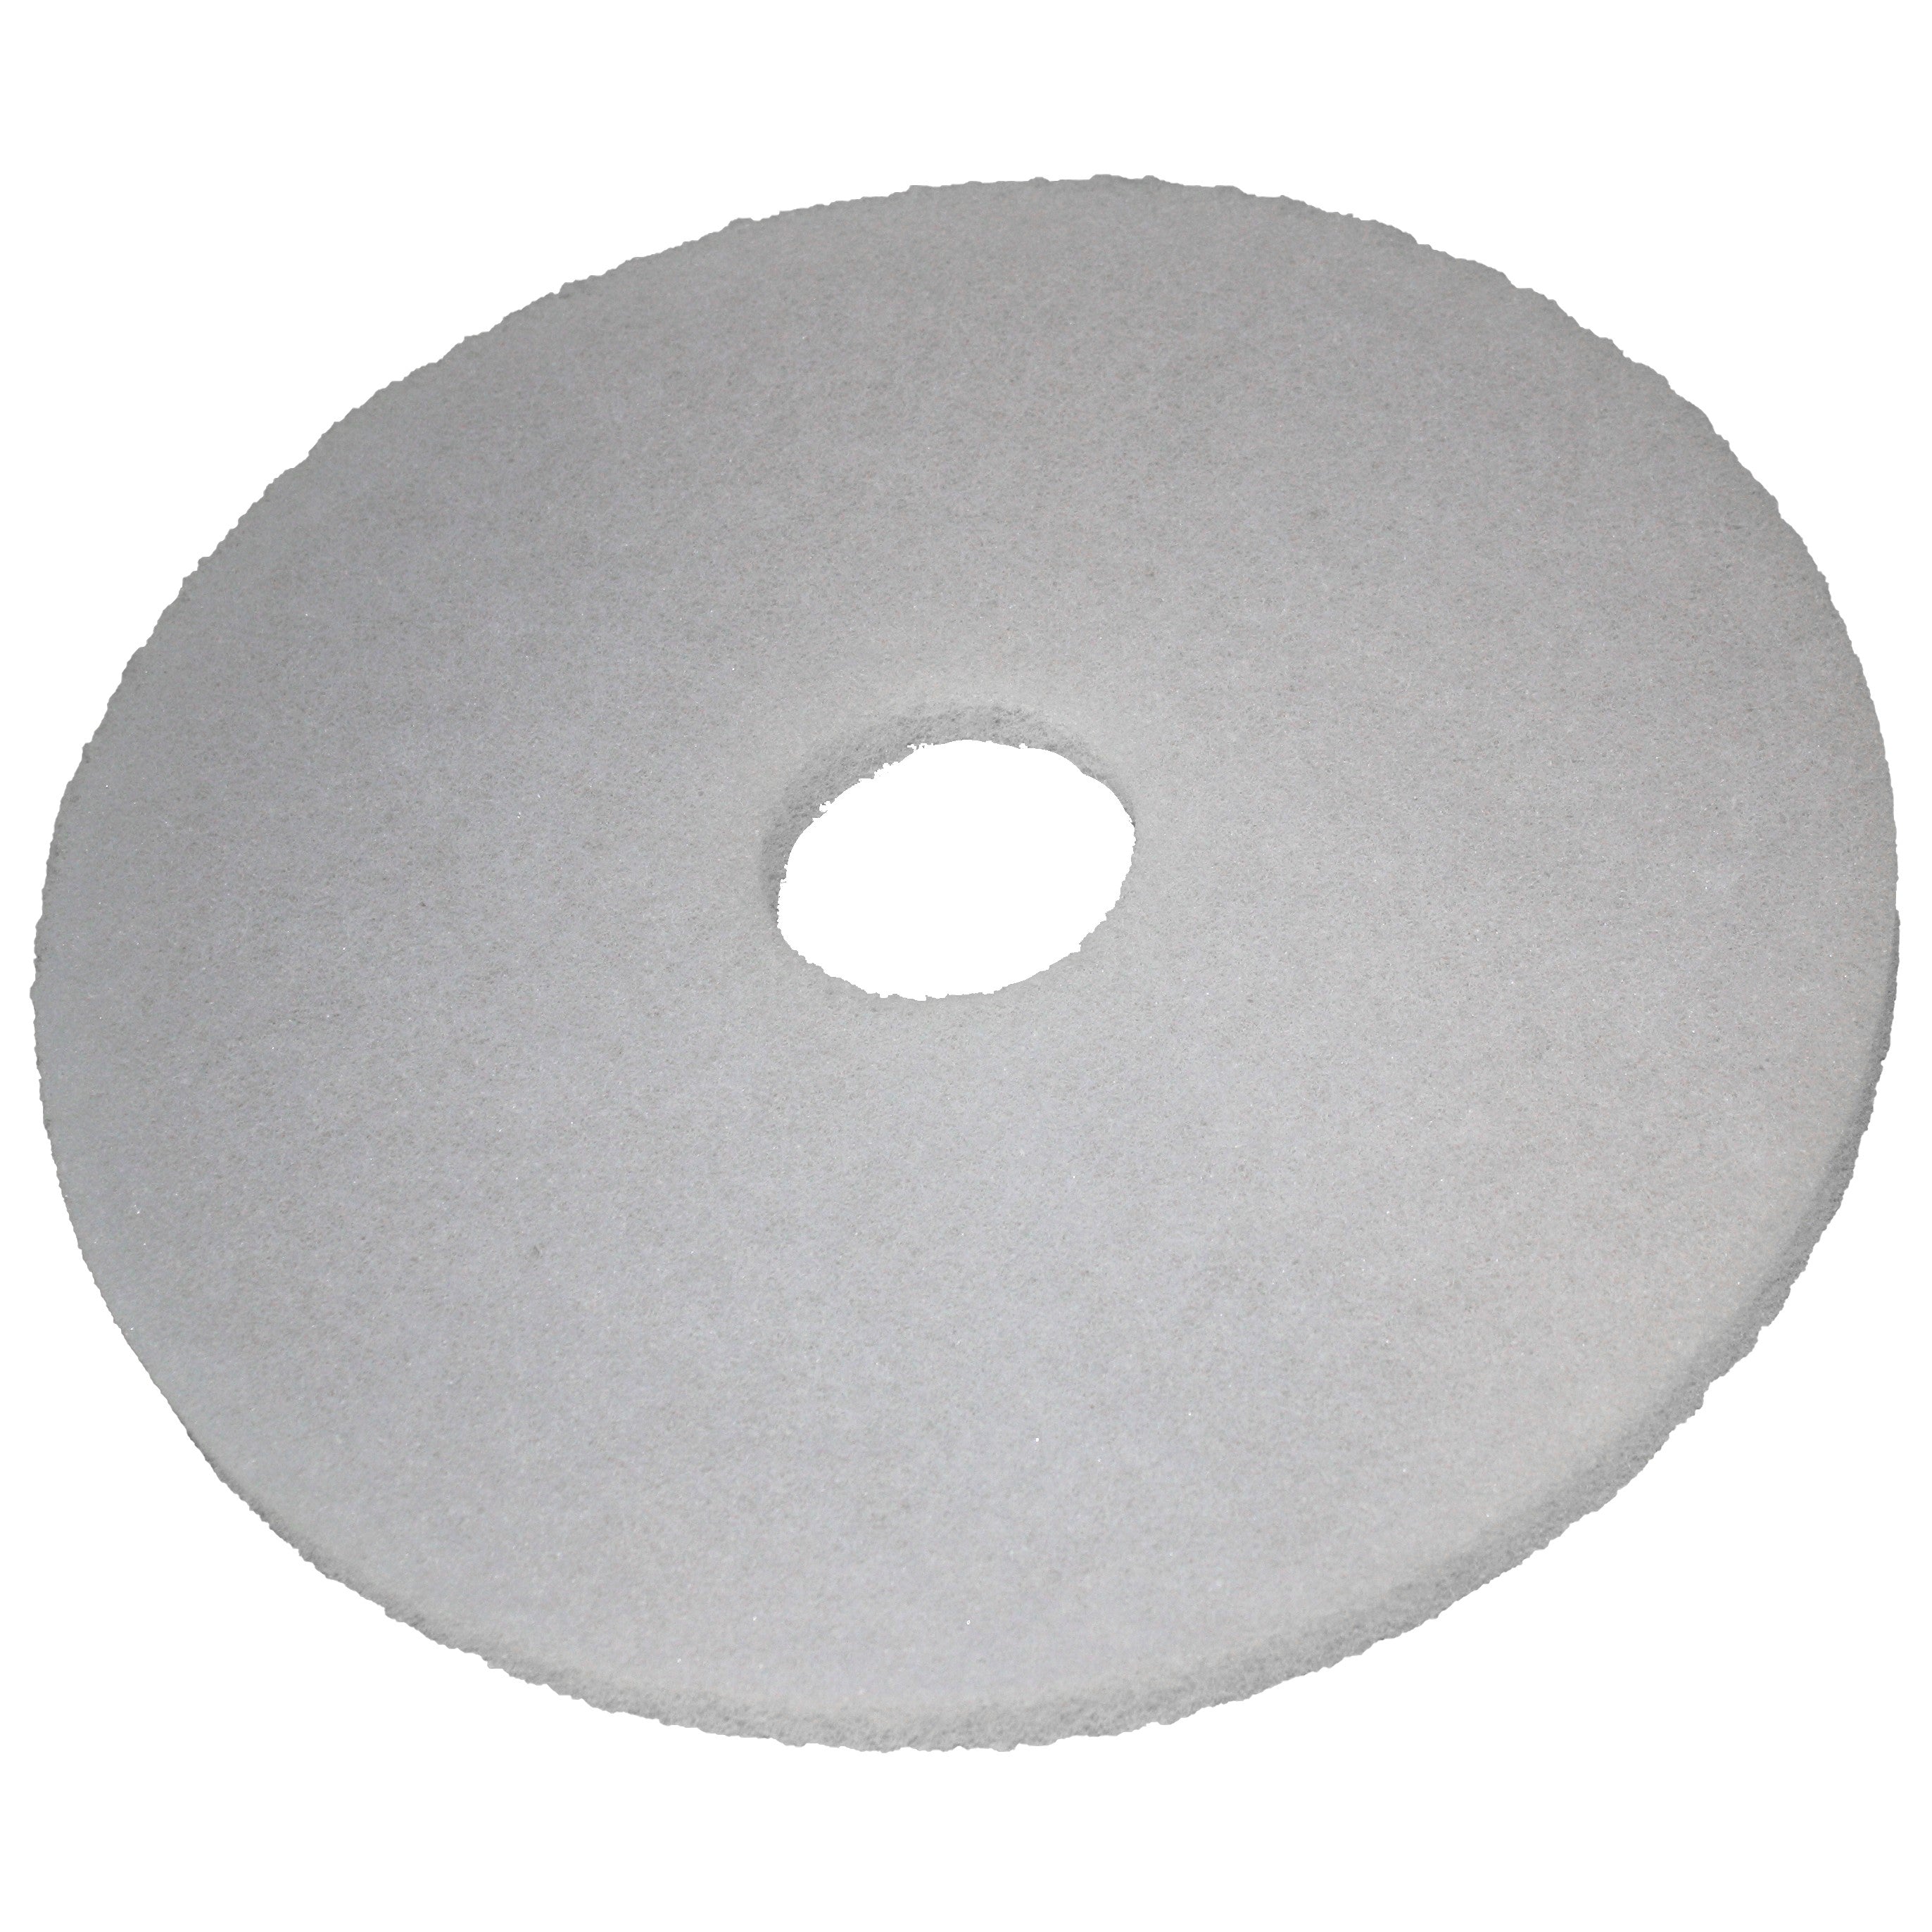 Pad blanc, Ø 508 mm, polyester